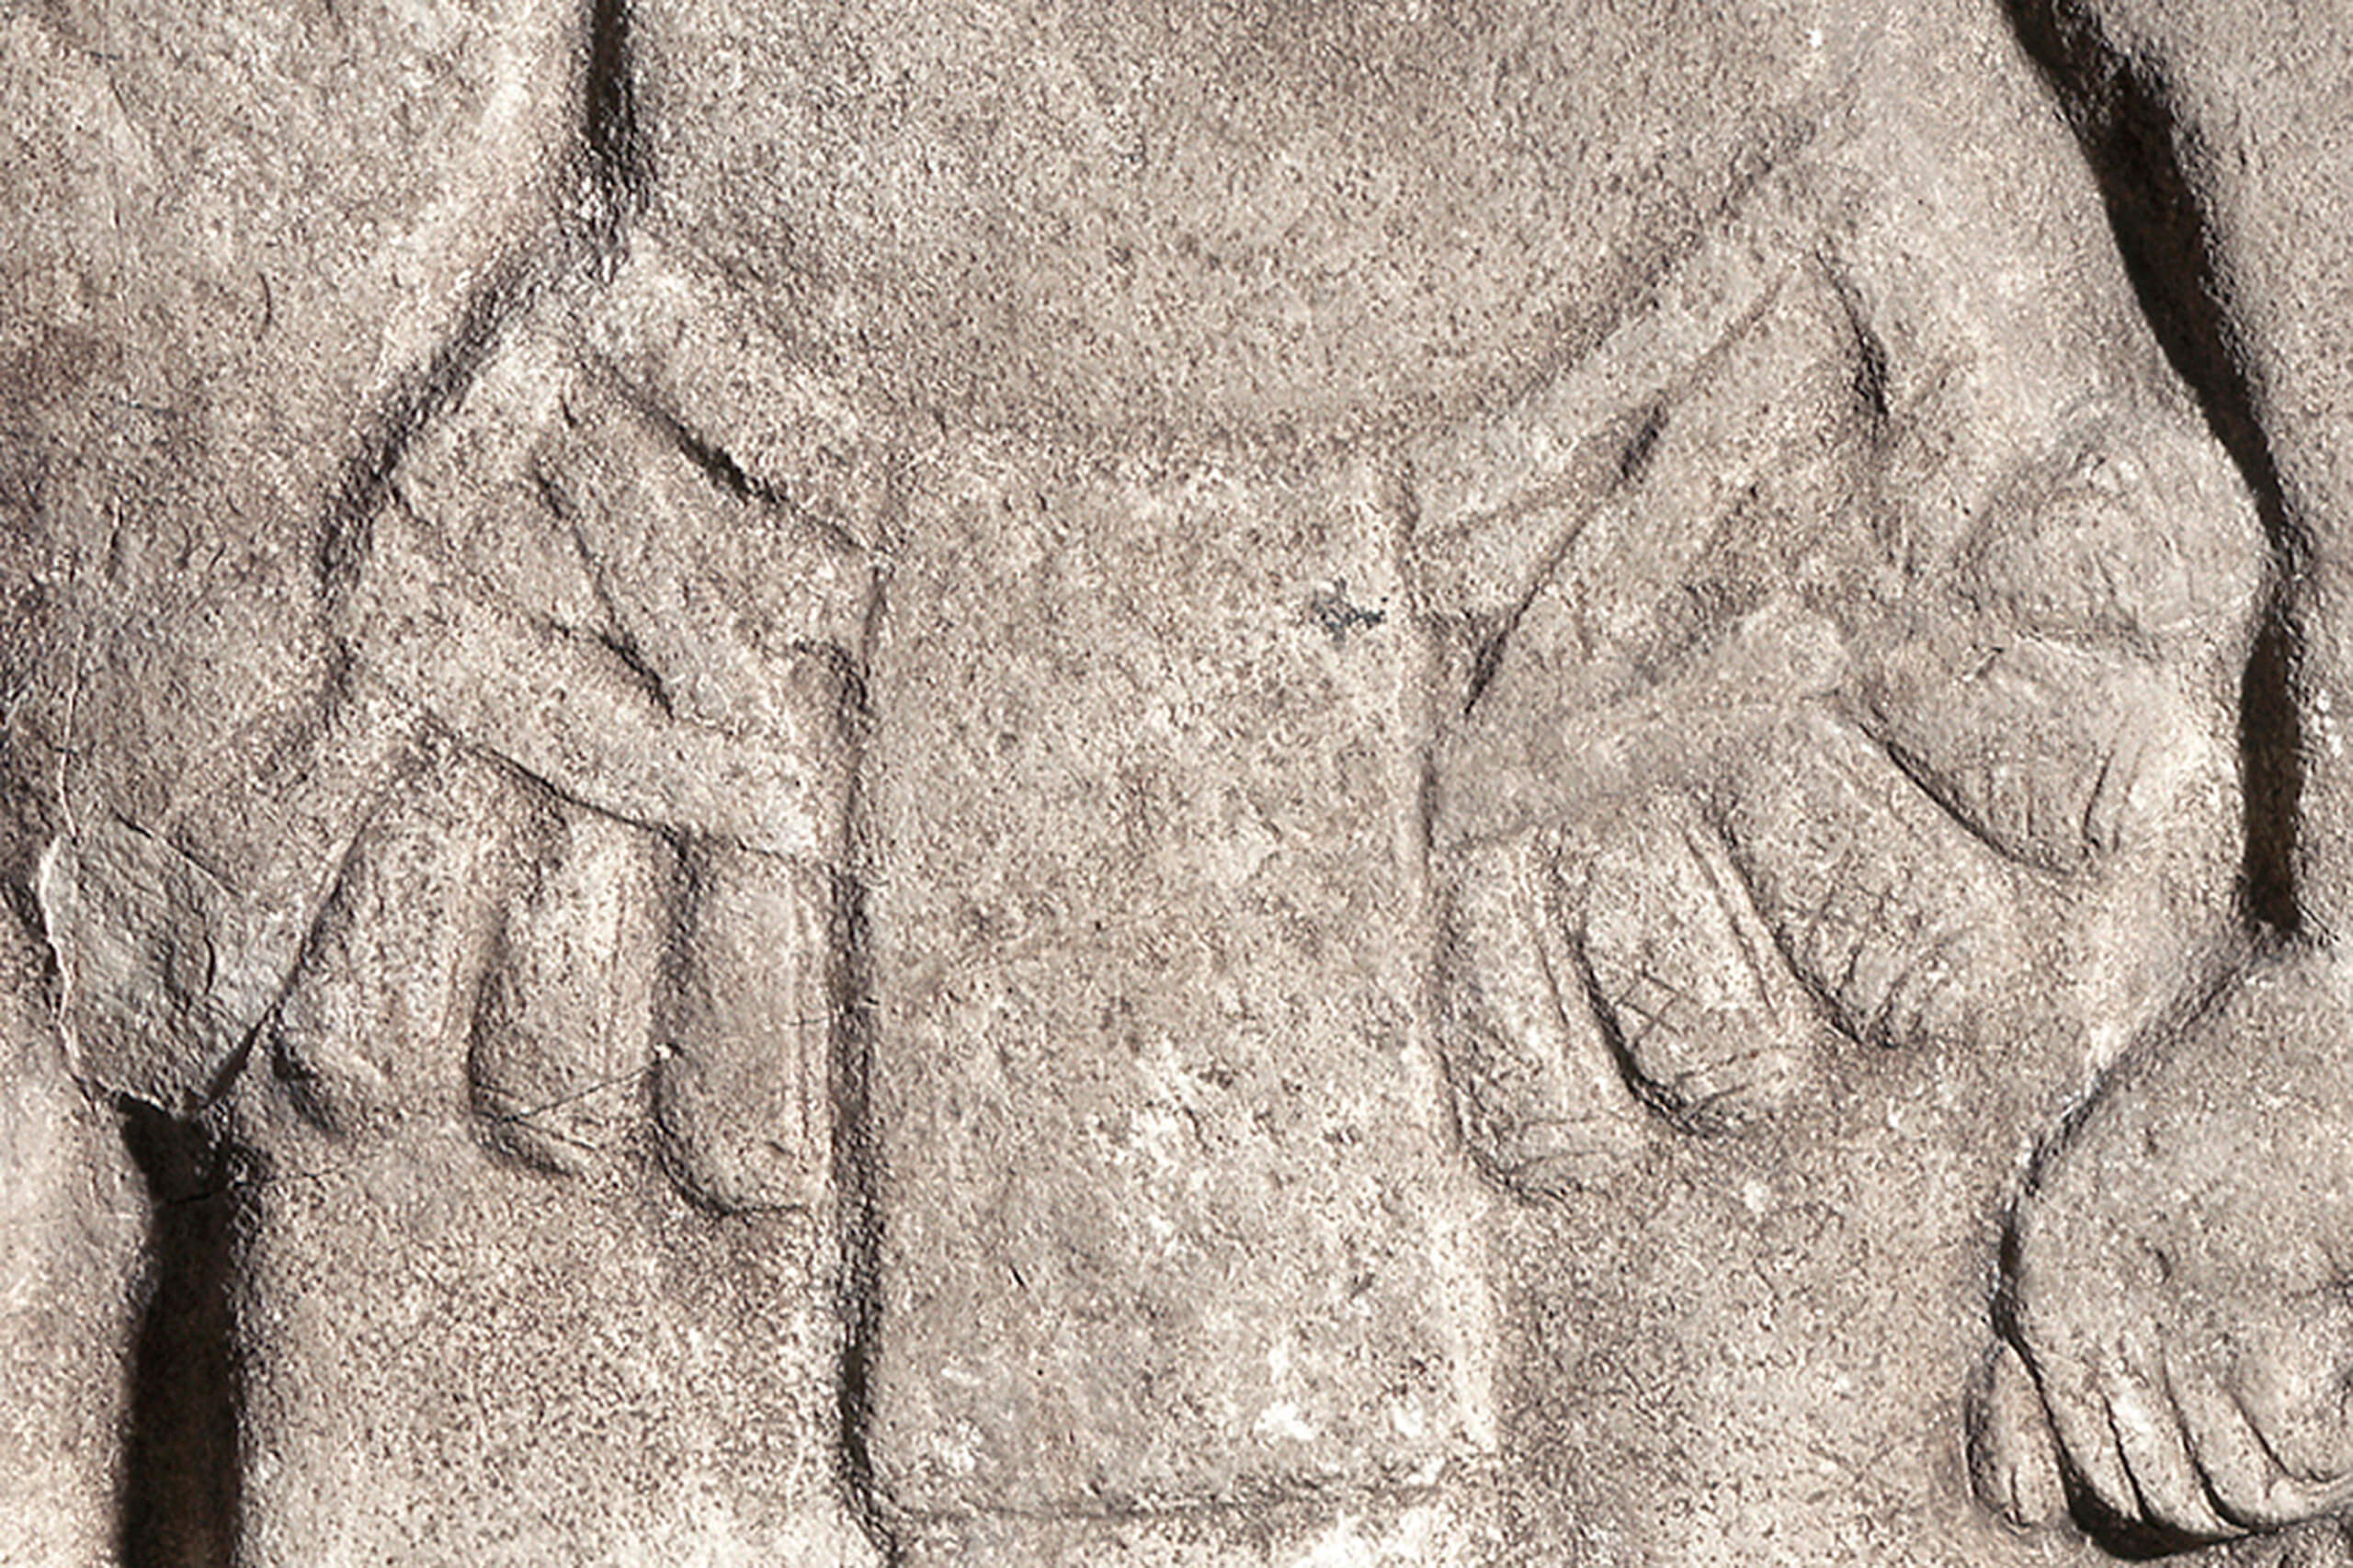 Estela con personaje masculino de pie | El México antiguo. Salas de Arte Prehispánico | Museo Amparo, Puebla